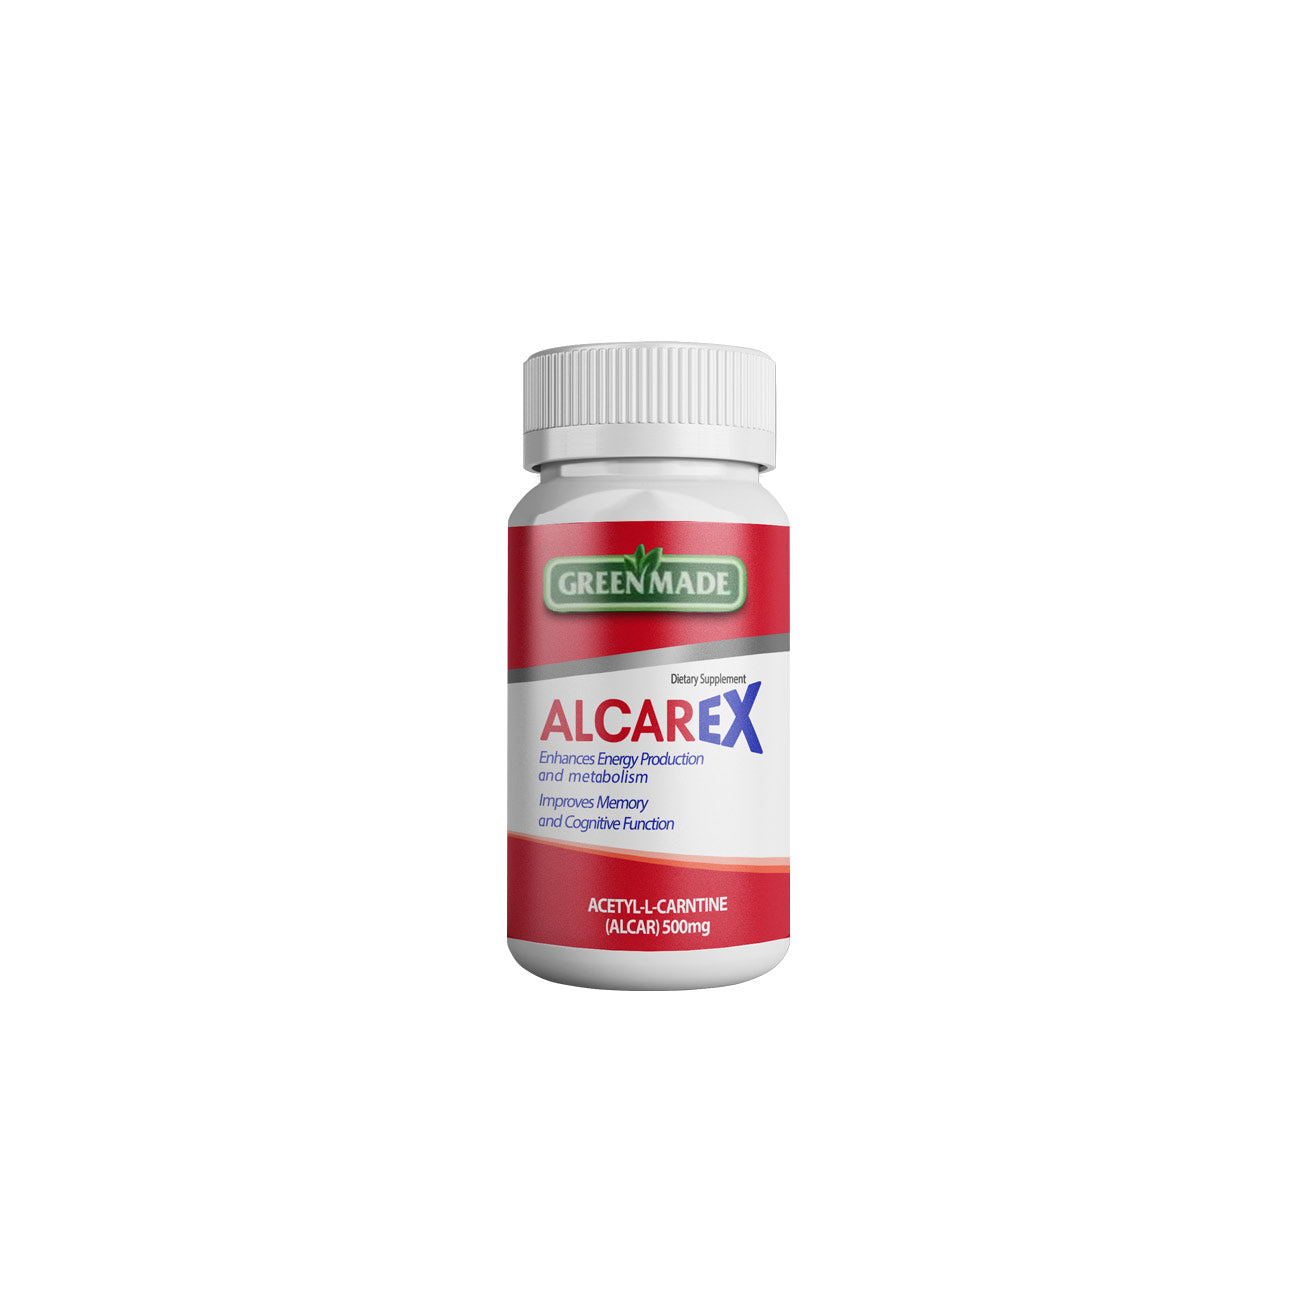 Alcarex vitamin